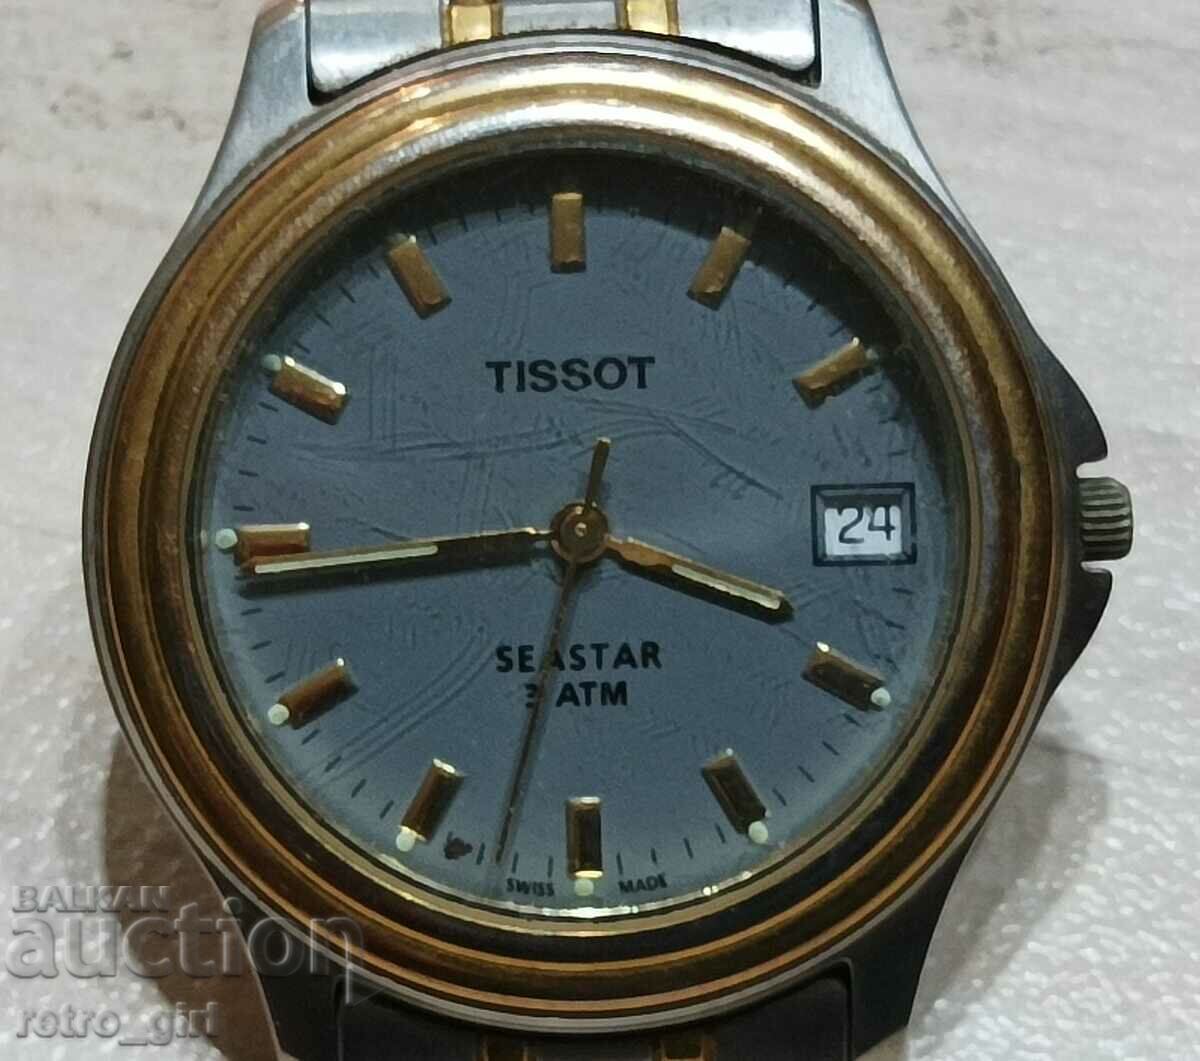 I am selling a "TISSOT" watch.